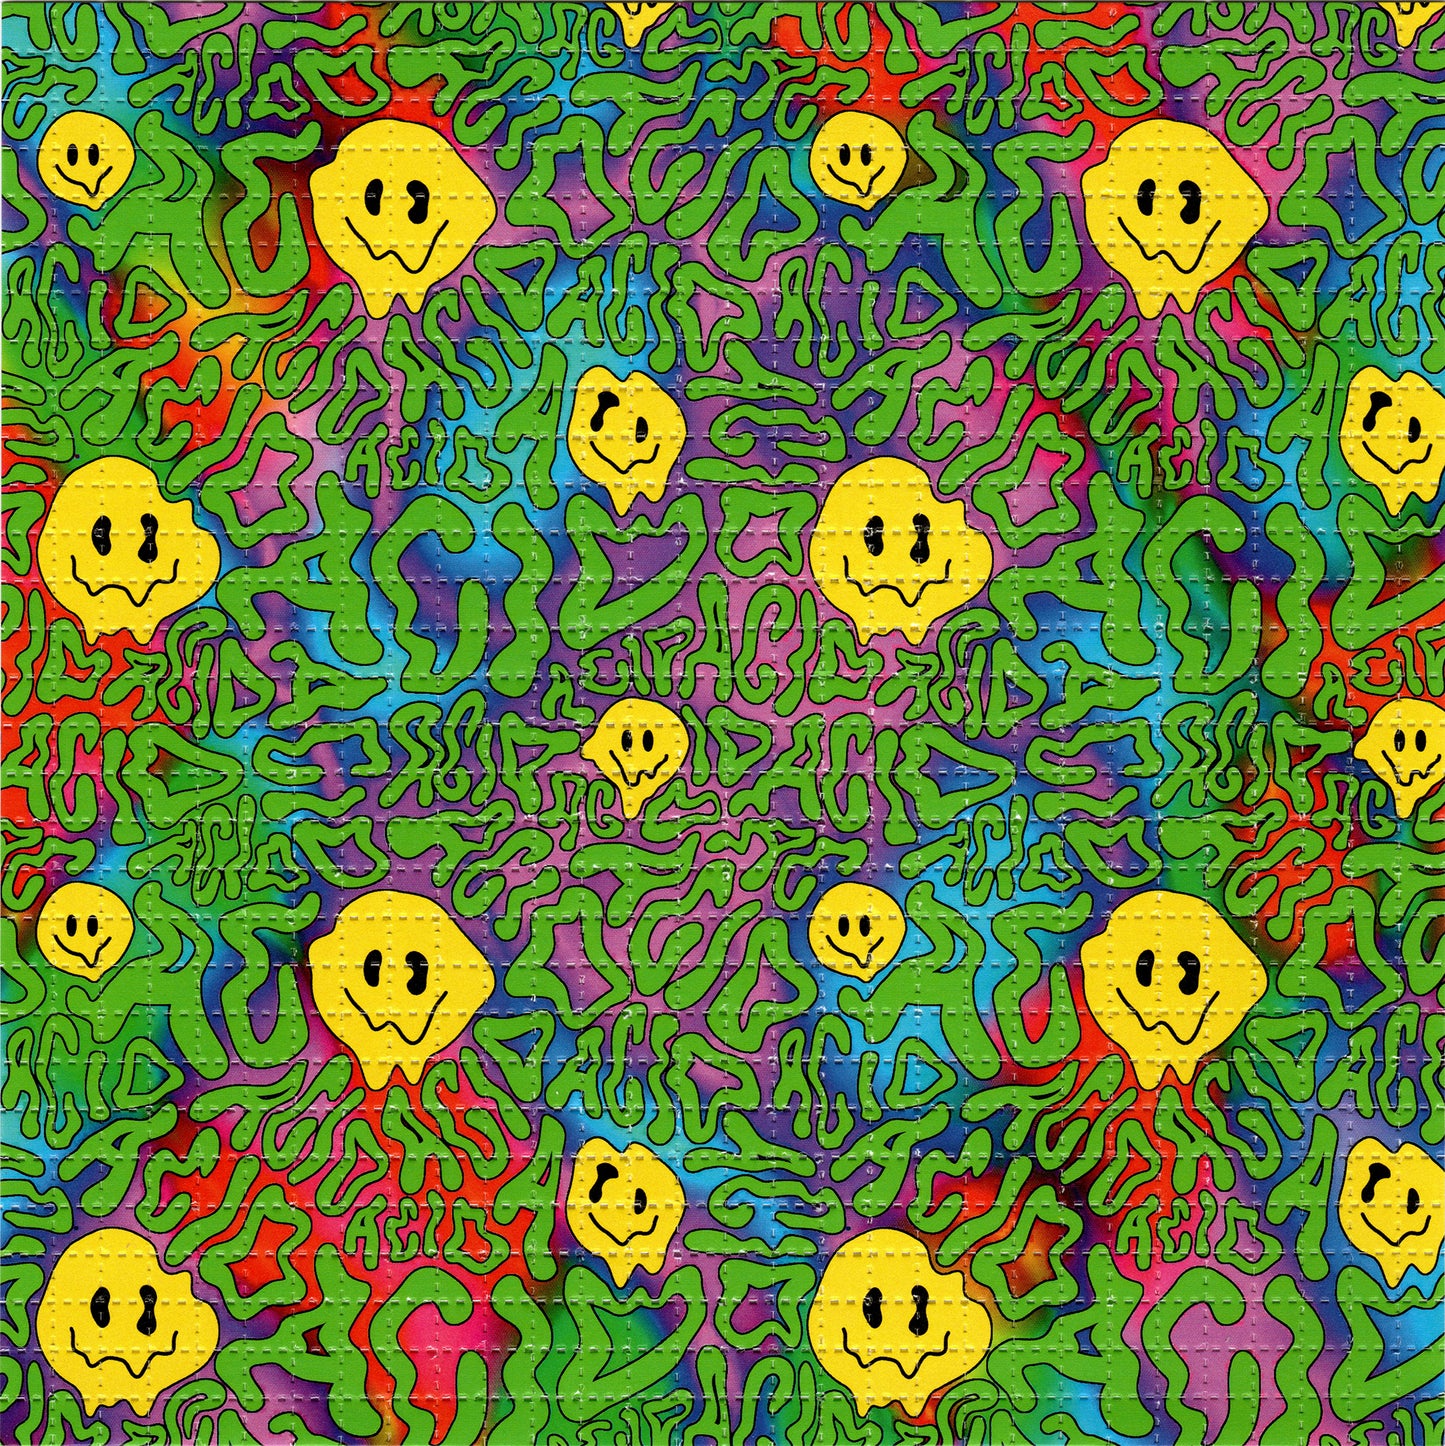 Acid Melty Smiles LSD blotter art print